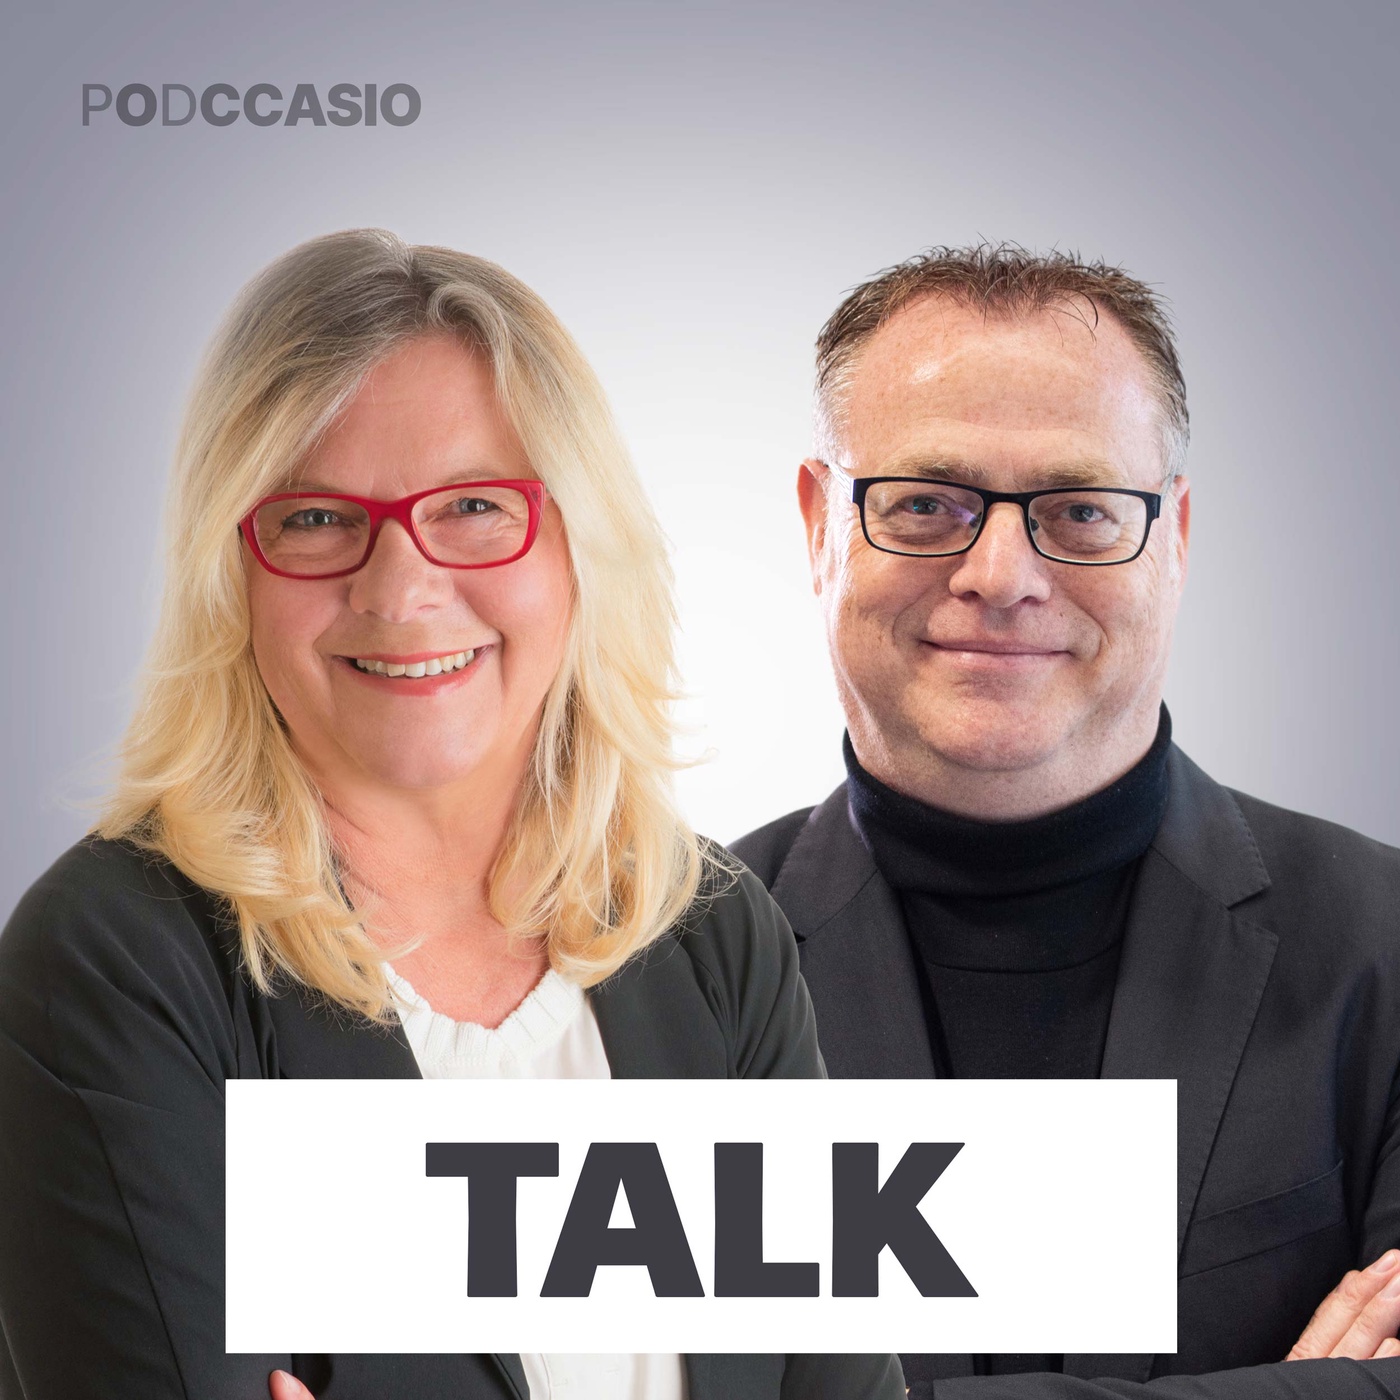 Unternehmensnachfolge aus der Sicht einer Personalvermittlerin: Sabine Perry im Talk mit Christoph Hau / Podccasio Talk